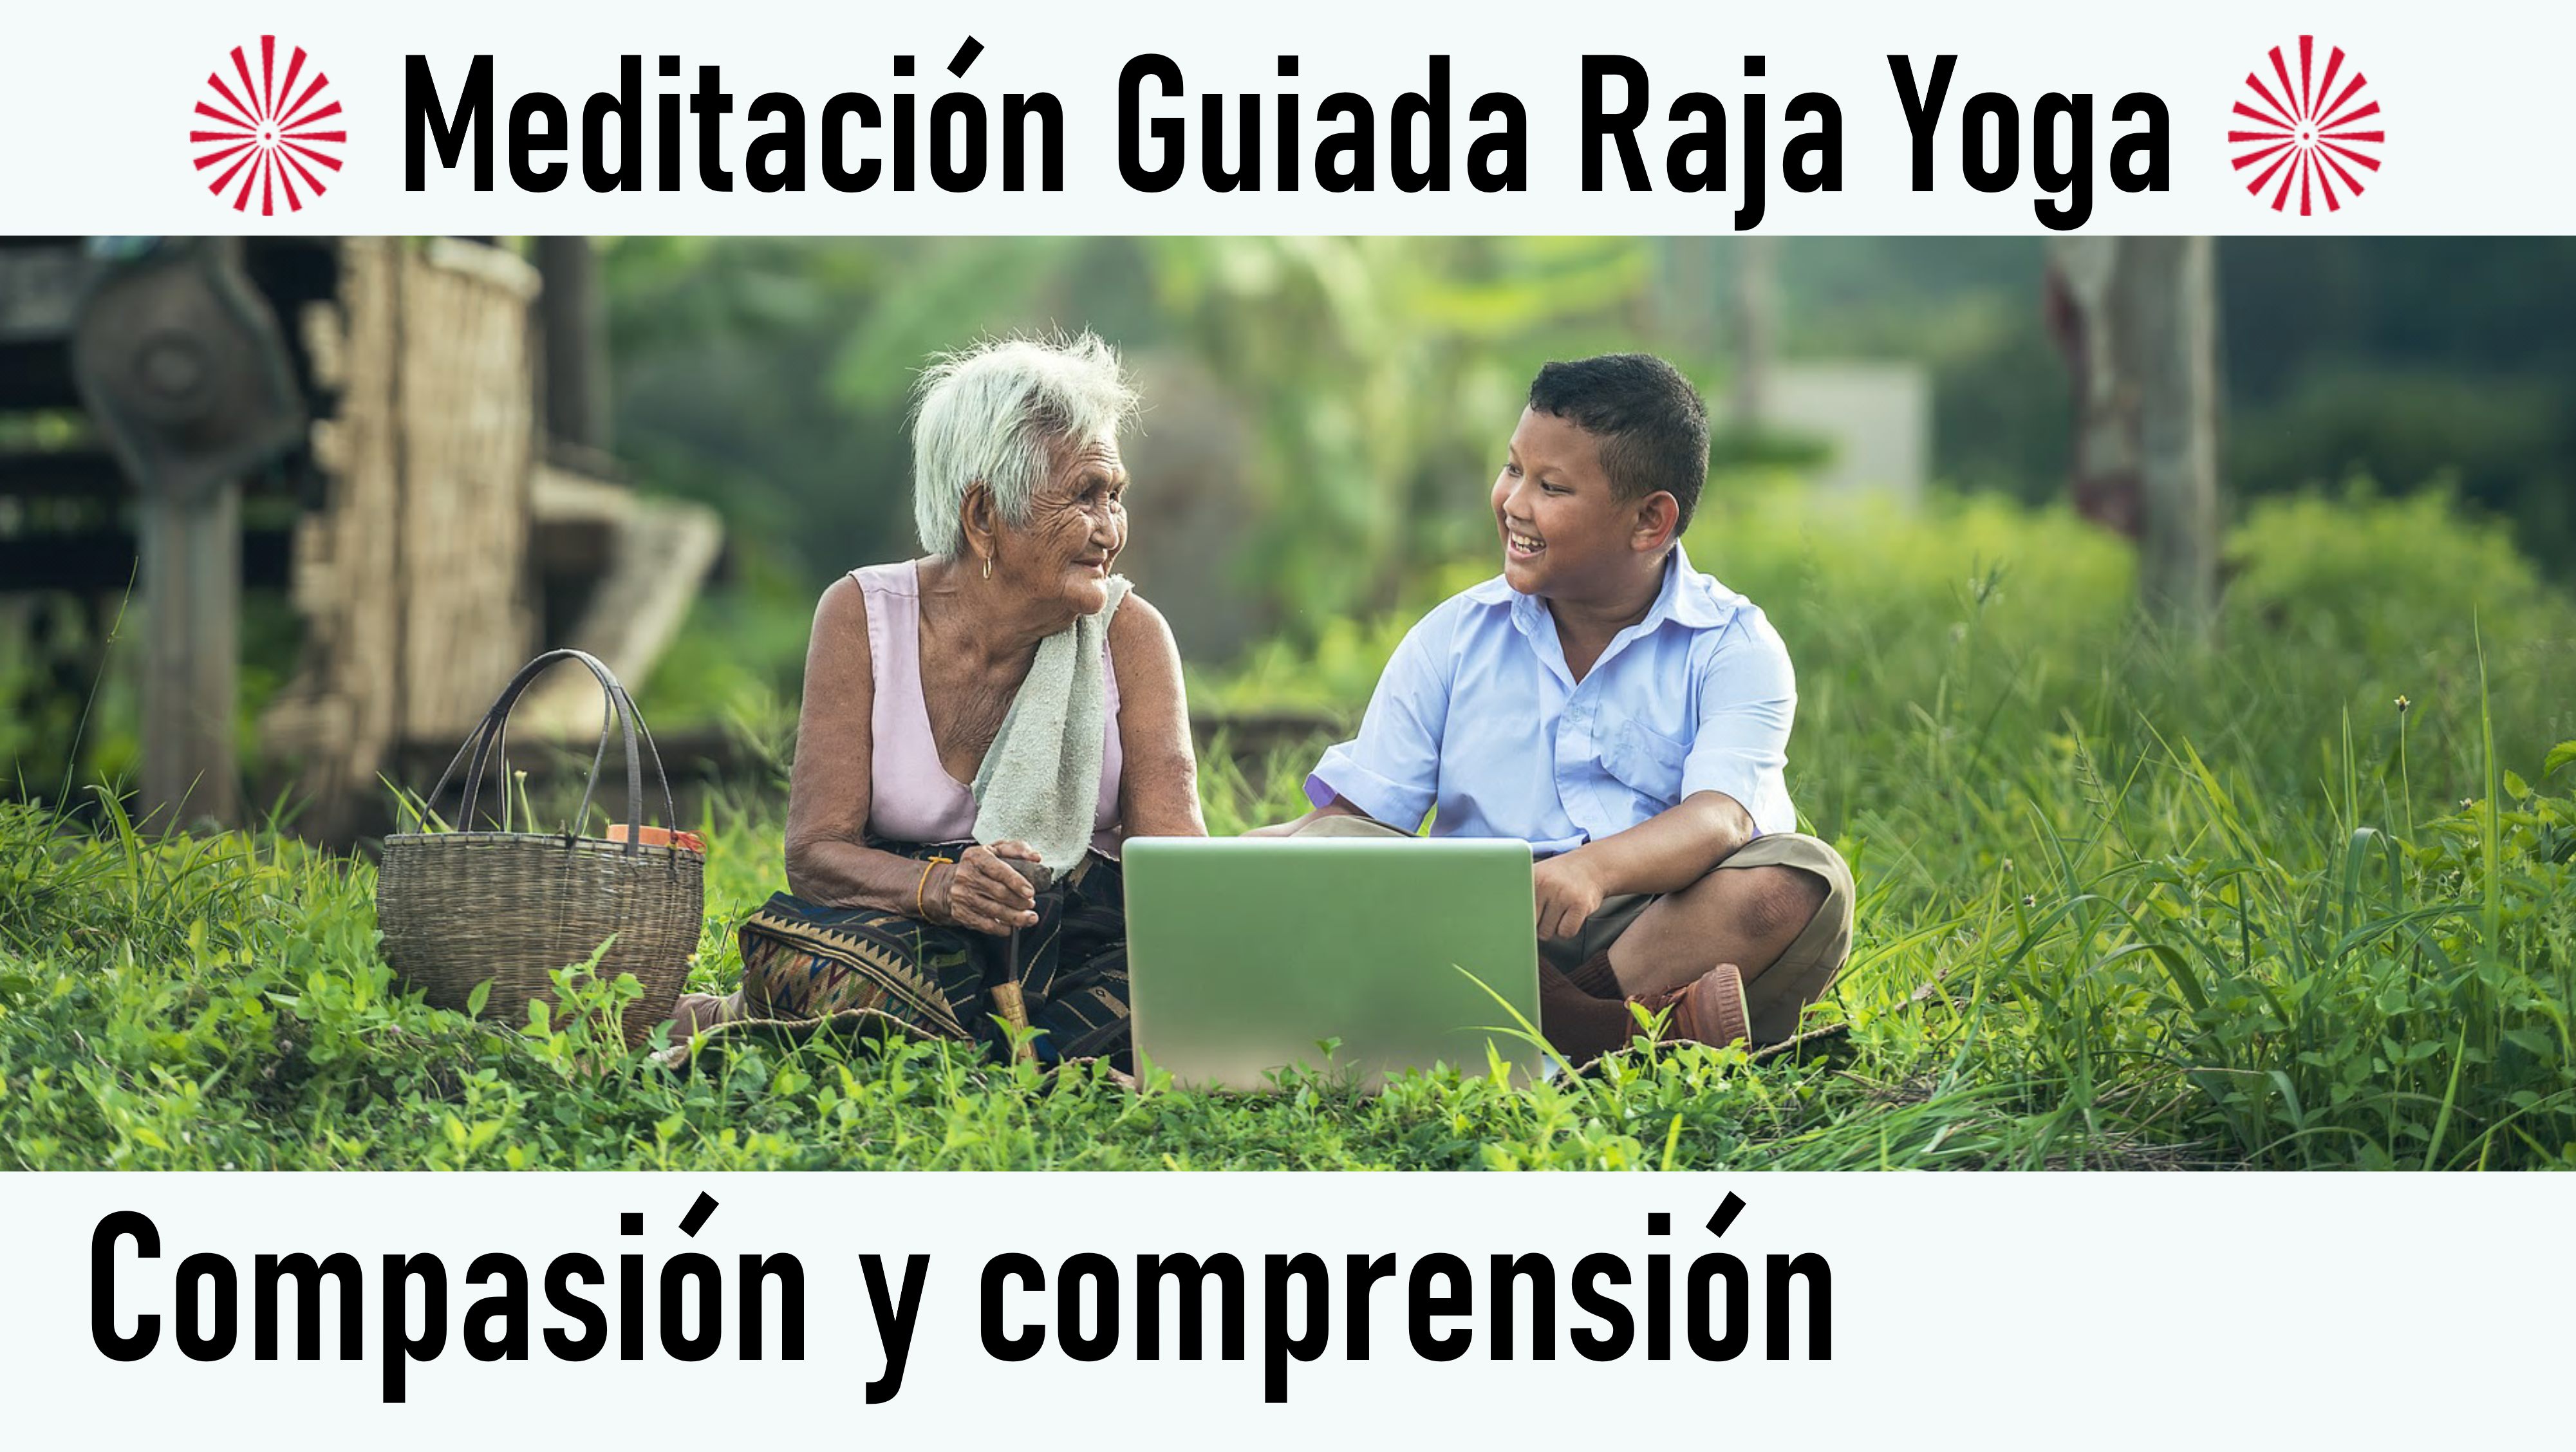 Meditación Raja Yoga: Compasión y comprensión (31 Julio 2020) On-line desde Madrid